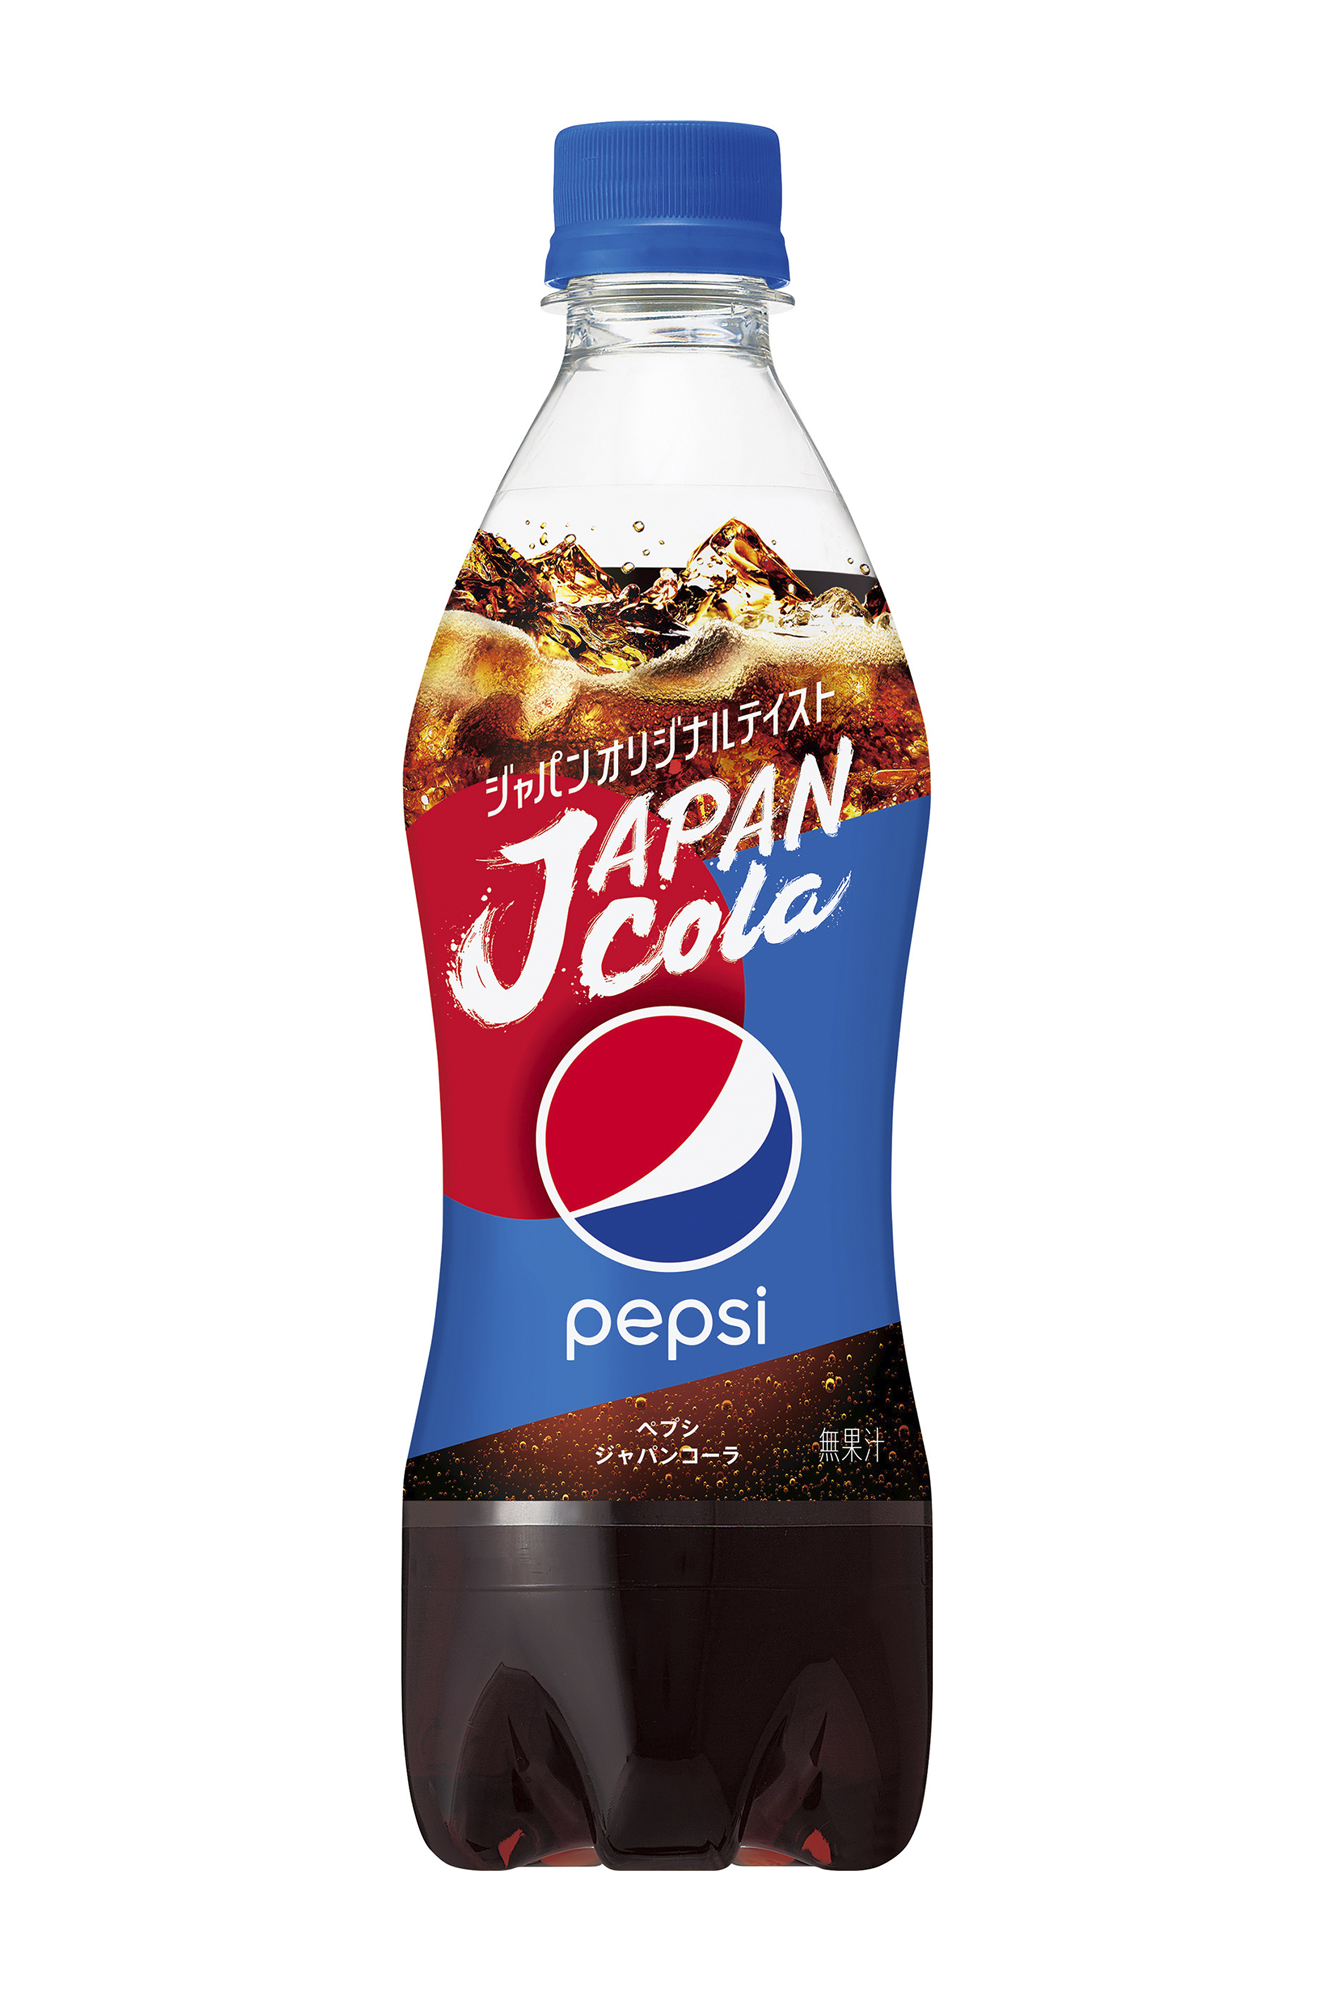 日本の コーラ好き が うまい と唸る味わいを追求 ペプシ ジャパンコーラ 誕生 日本限定商品 ニュースリリース サントリー食品インターナショナル